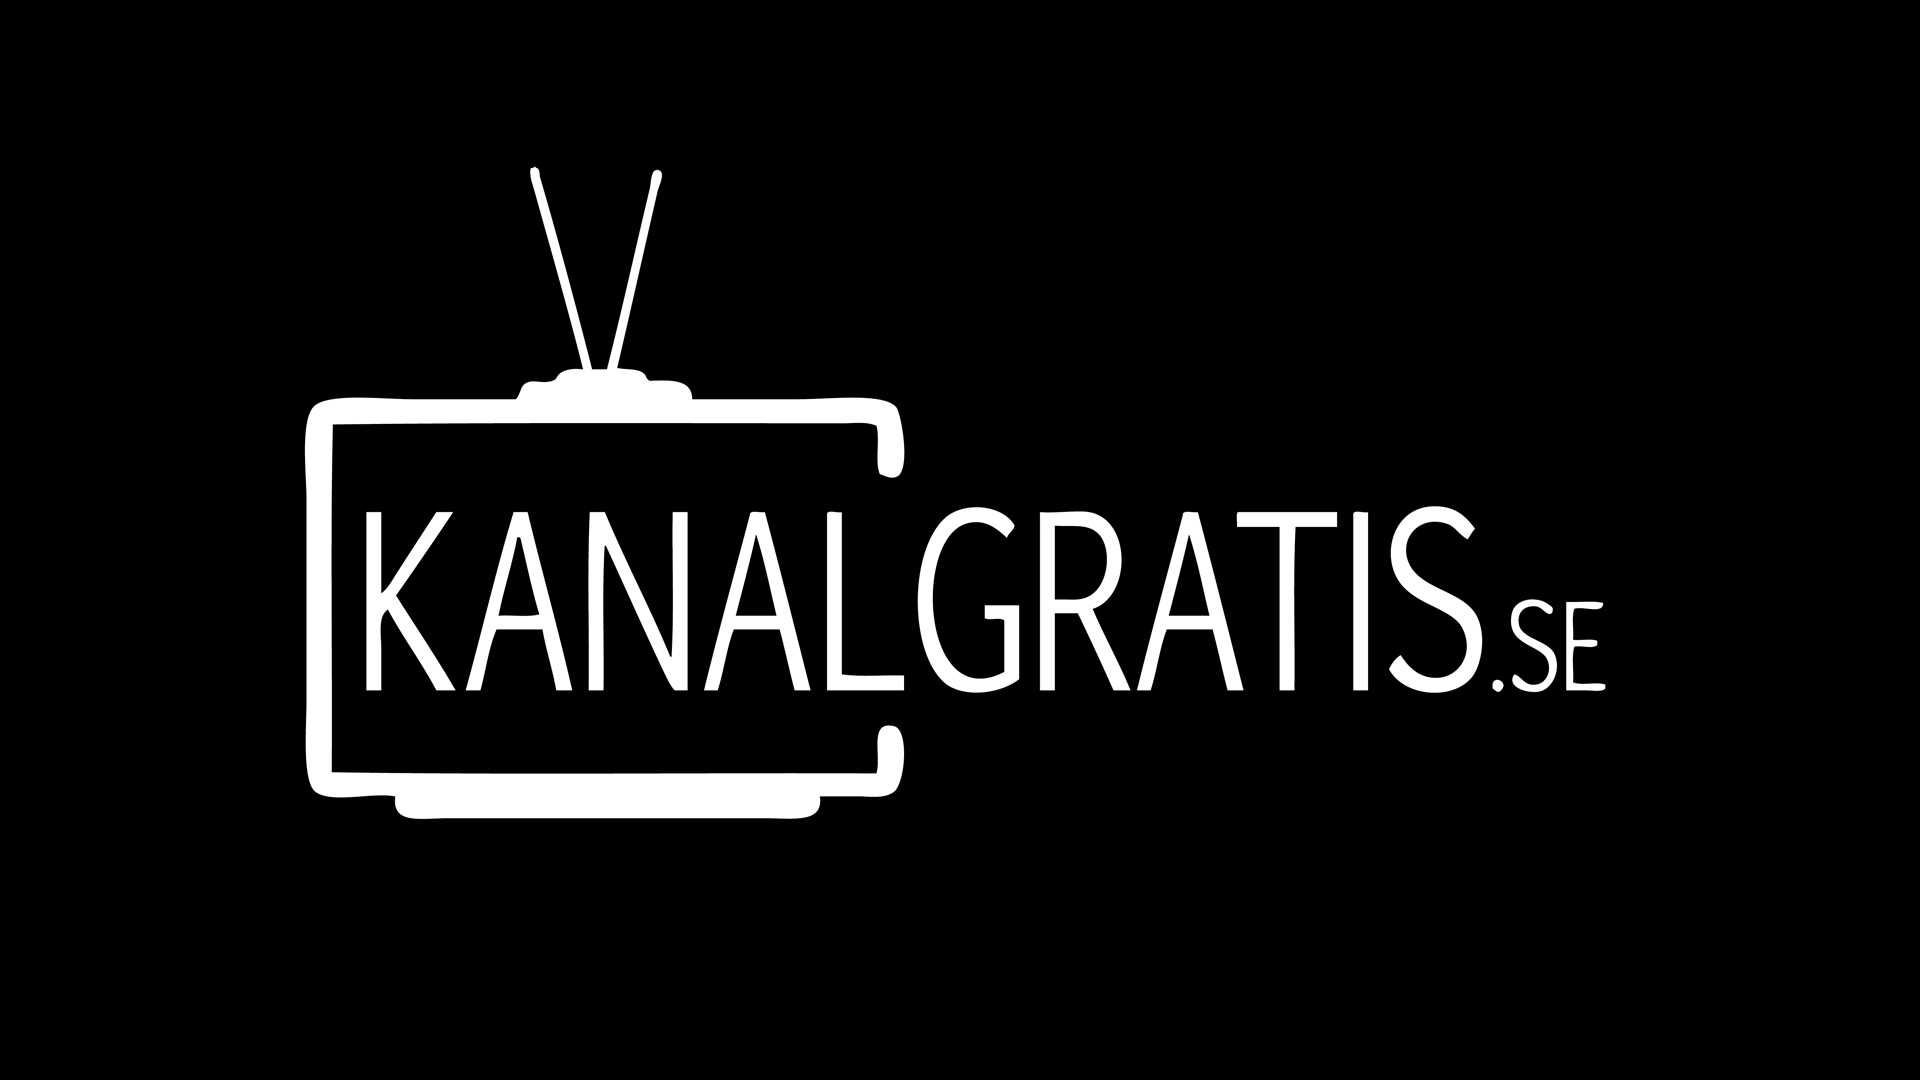 Kanalgratis.se